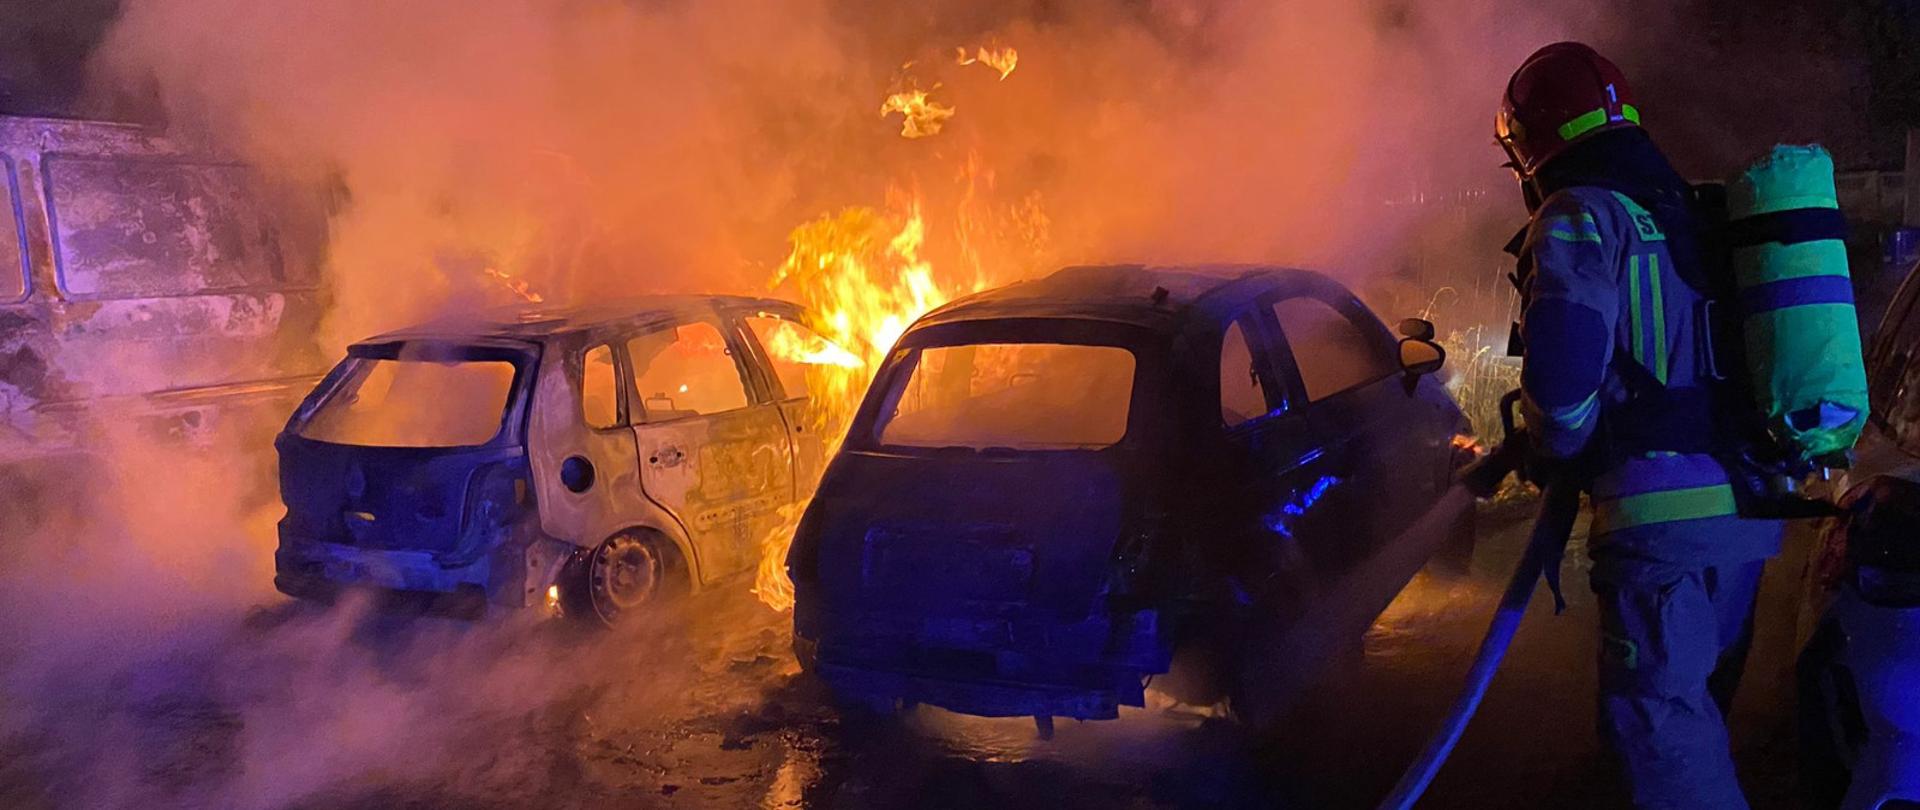 Zdjęcie wykonane jest w nocy. Na pierwszym planie widać strażaka gaszącego płonące auta. Na drugim planie widać dwa palące się auta i unoszący się biały dym. Całe zdjęcie ma niebieską poświatę.